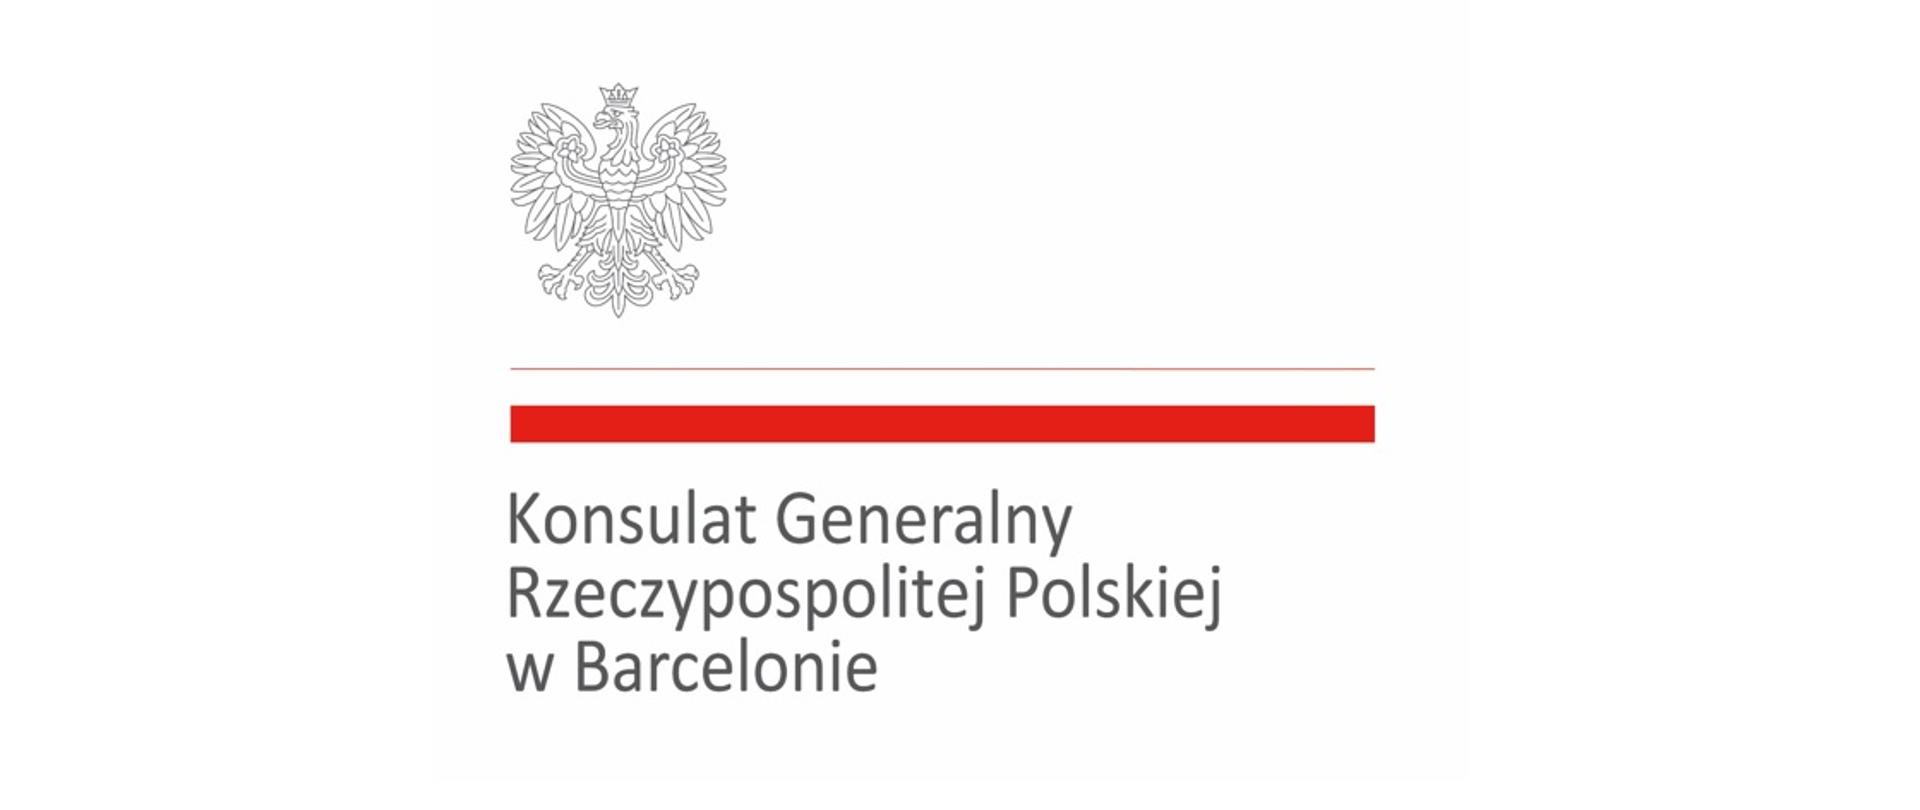 KG RP w Barcelonie logo Polskie 2